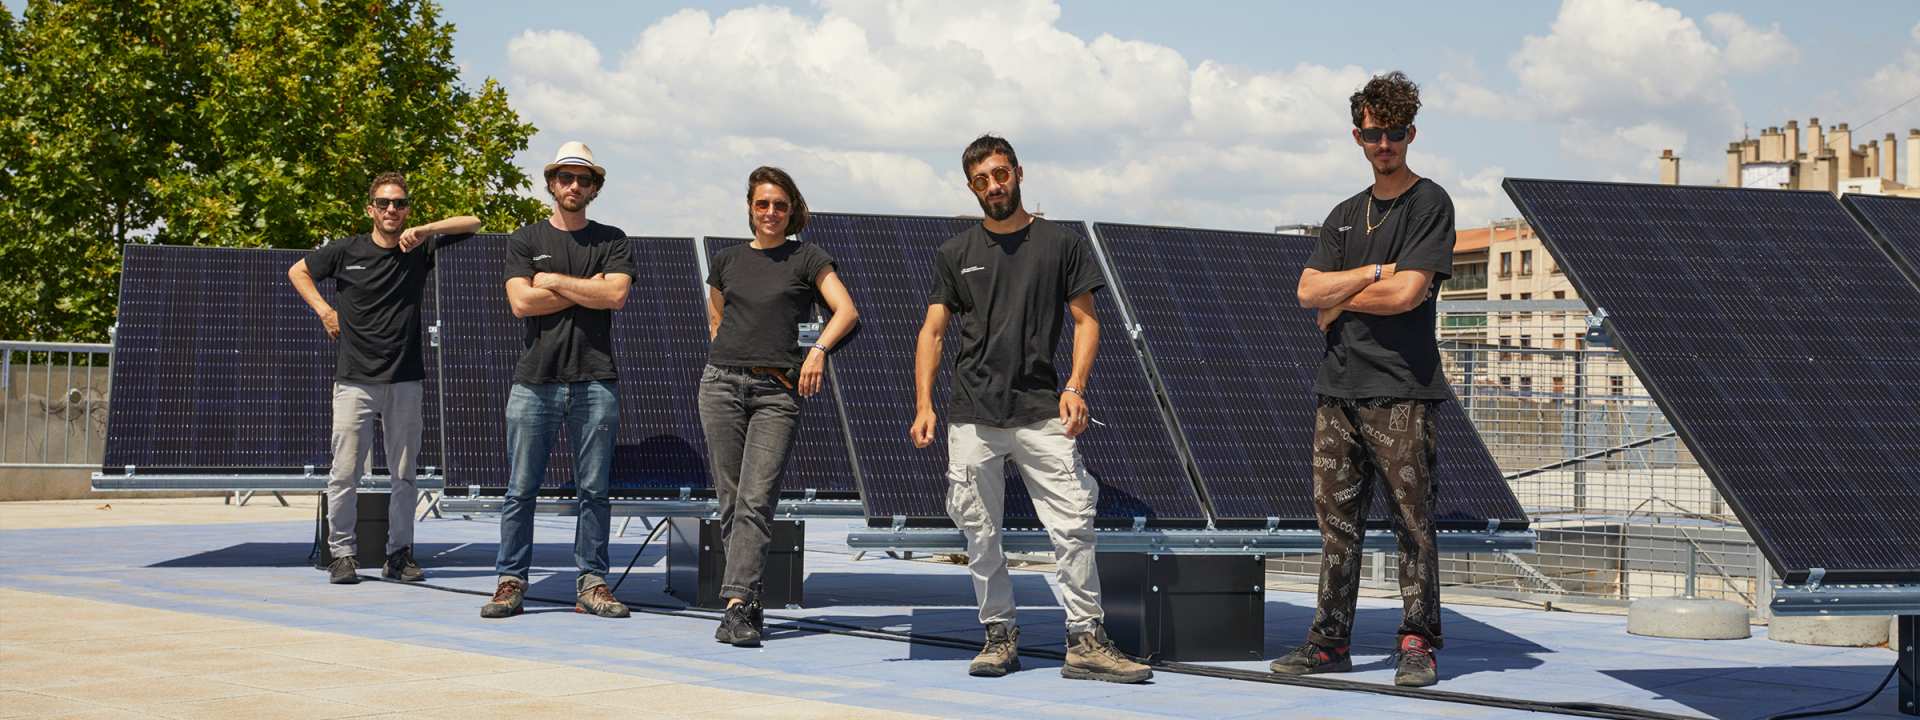 PikiP, Friche la Belle de Mai, equipe, panneaux solaire, Marseille